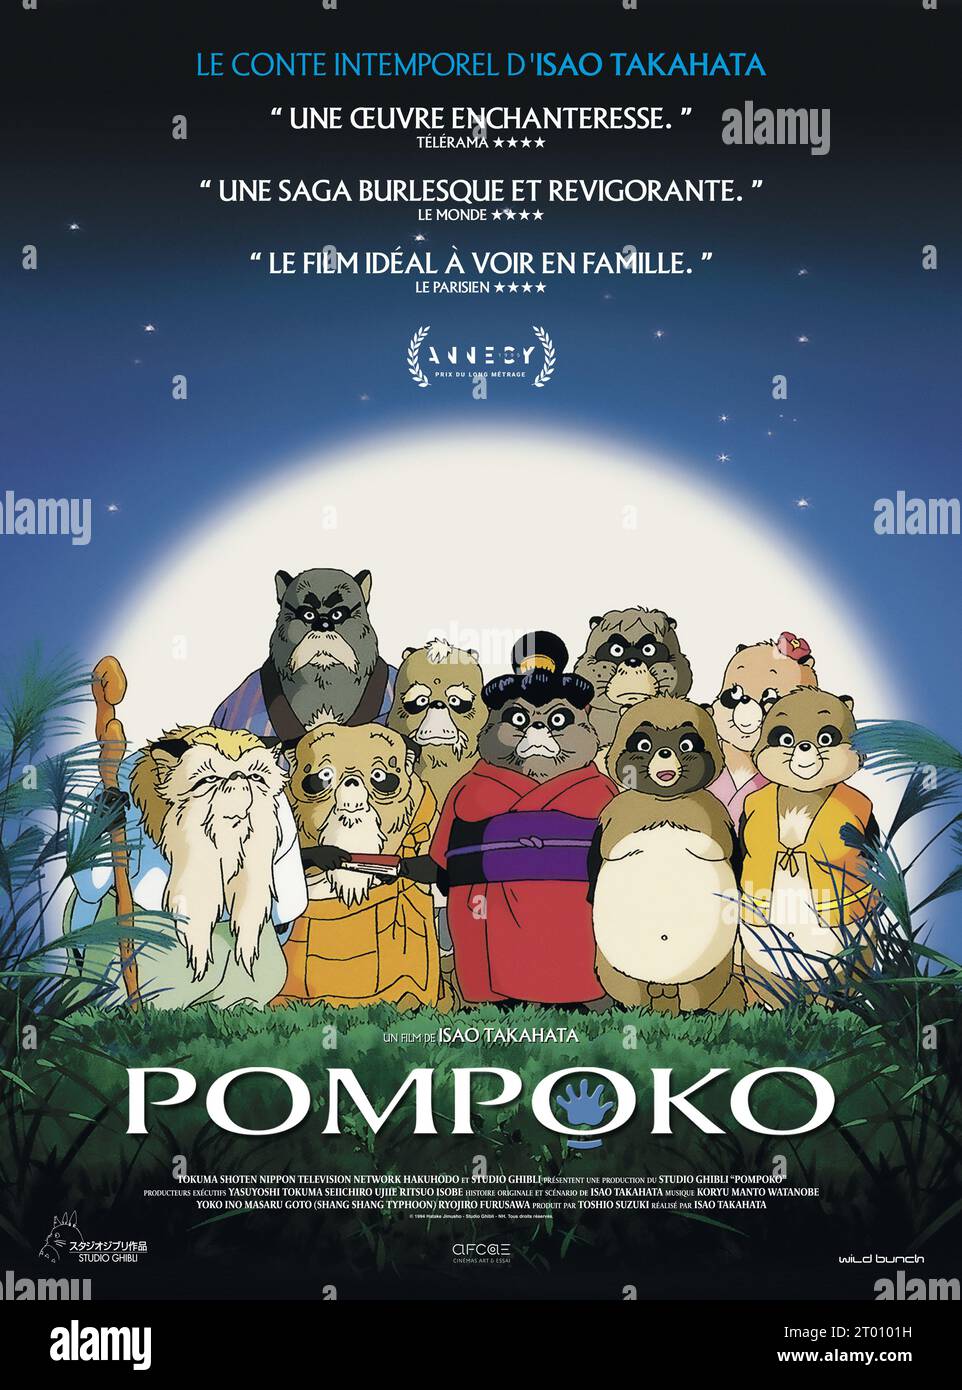 Pompoko Heisei tanuki gassen ponpoko Year : 1994 Japan Director : Isao Takahata Animation French poster Stock Photo